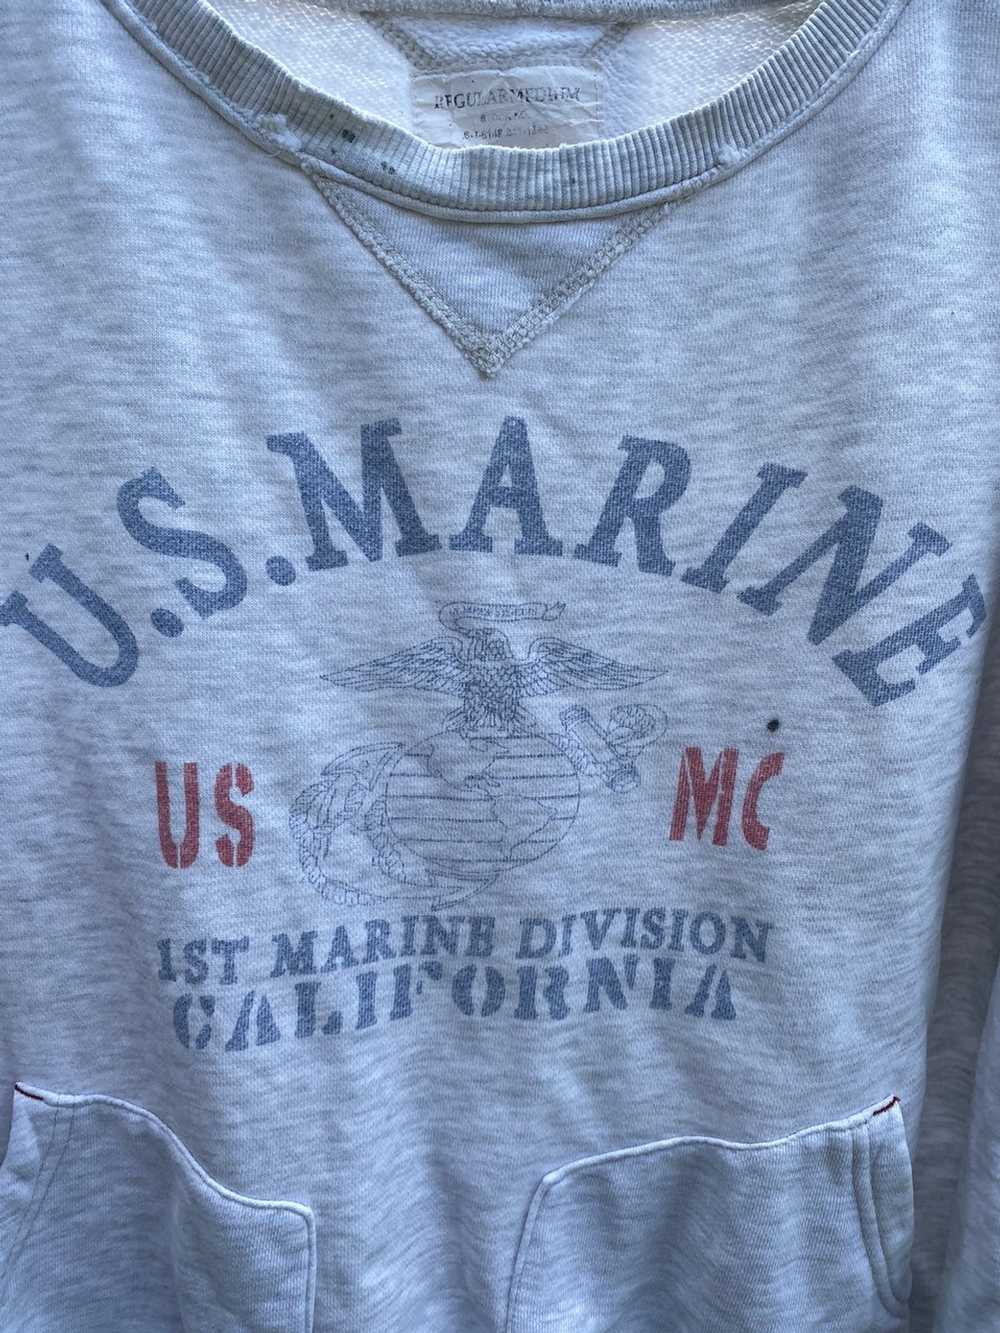 America × Usmc × Vintage Distressed U.S Marine 1s… - image 2